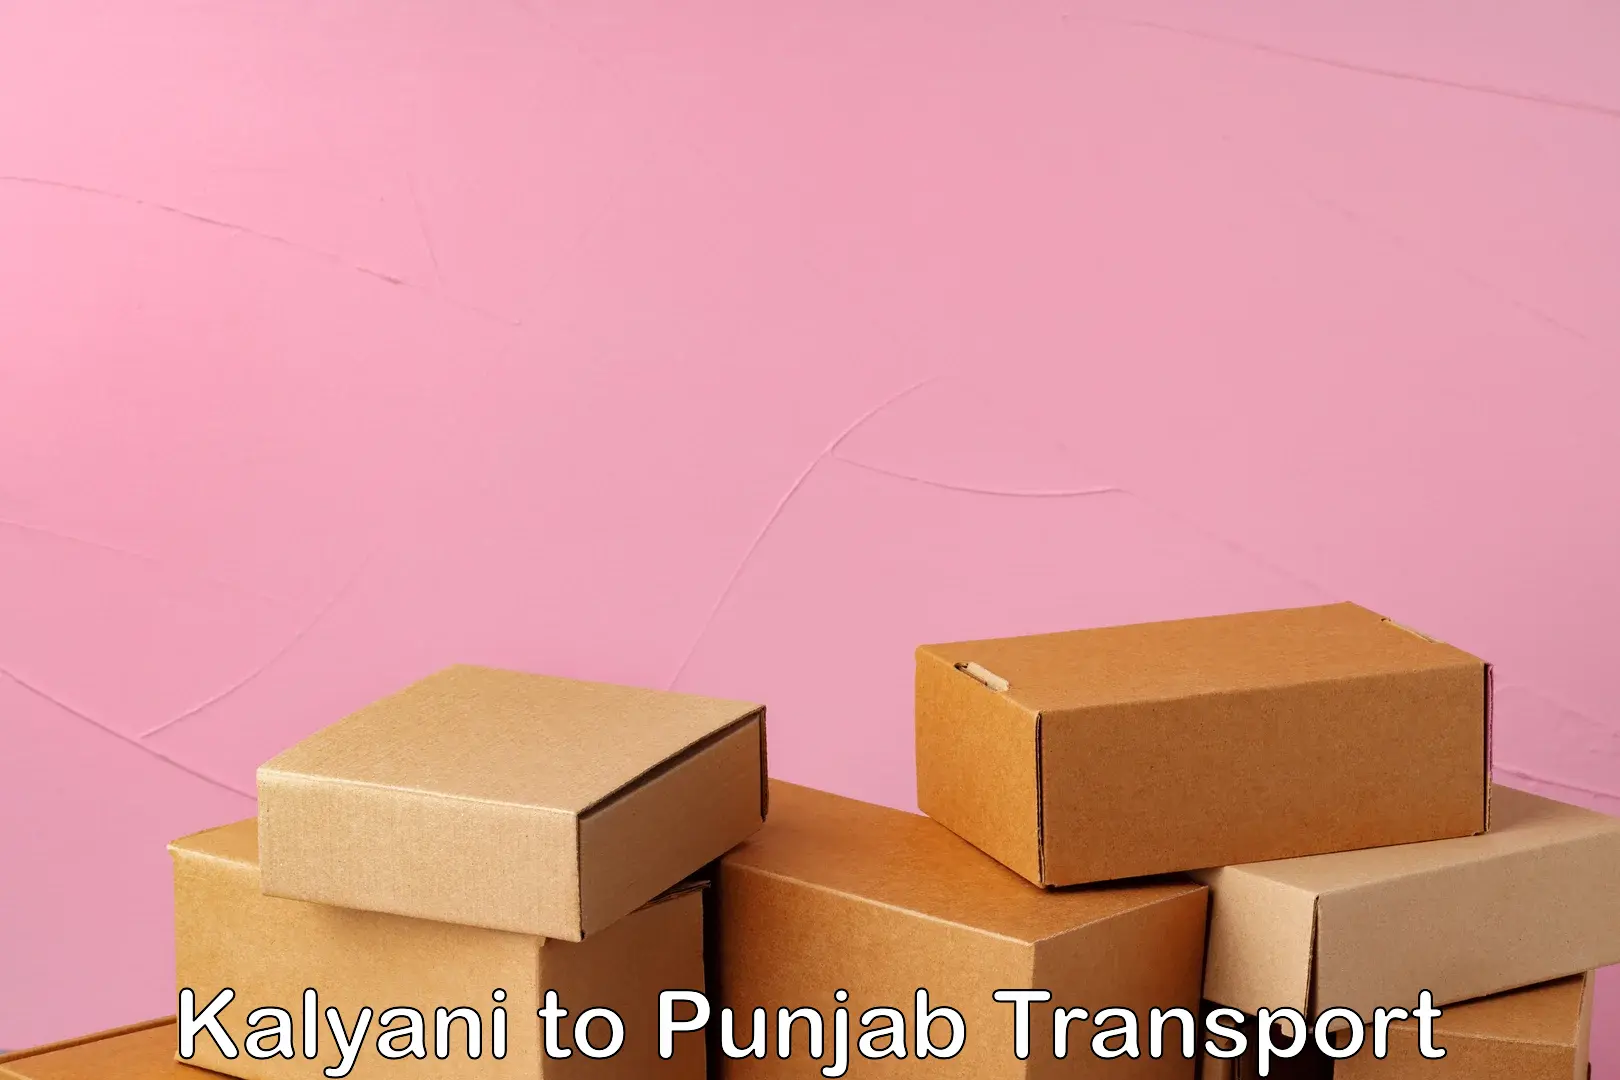 Cargo train transport services in Kalyani to Punjab